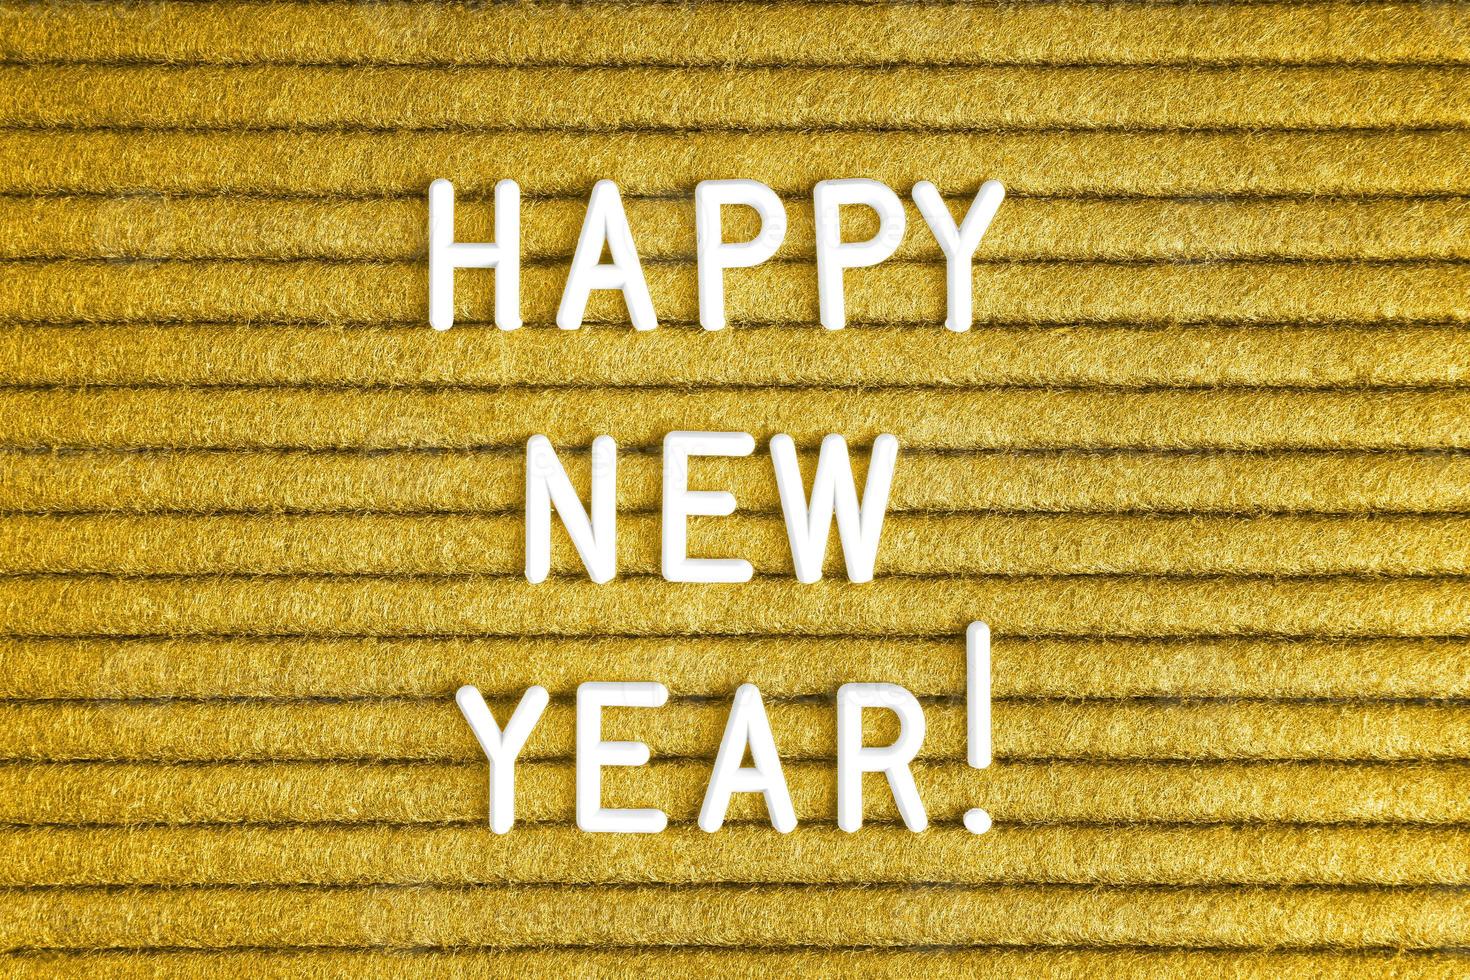 gott nytt år, text på gul filtbokstavstavla med vita bokstäver foto